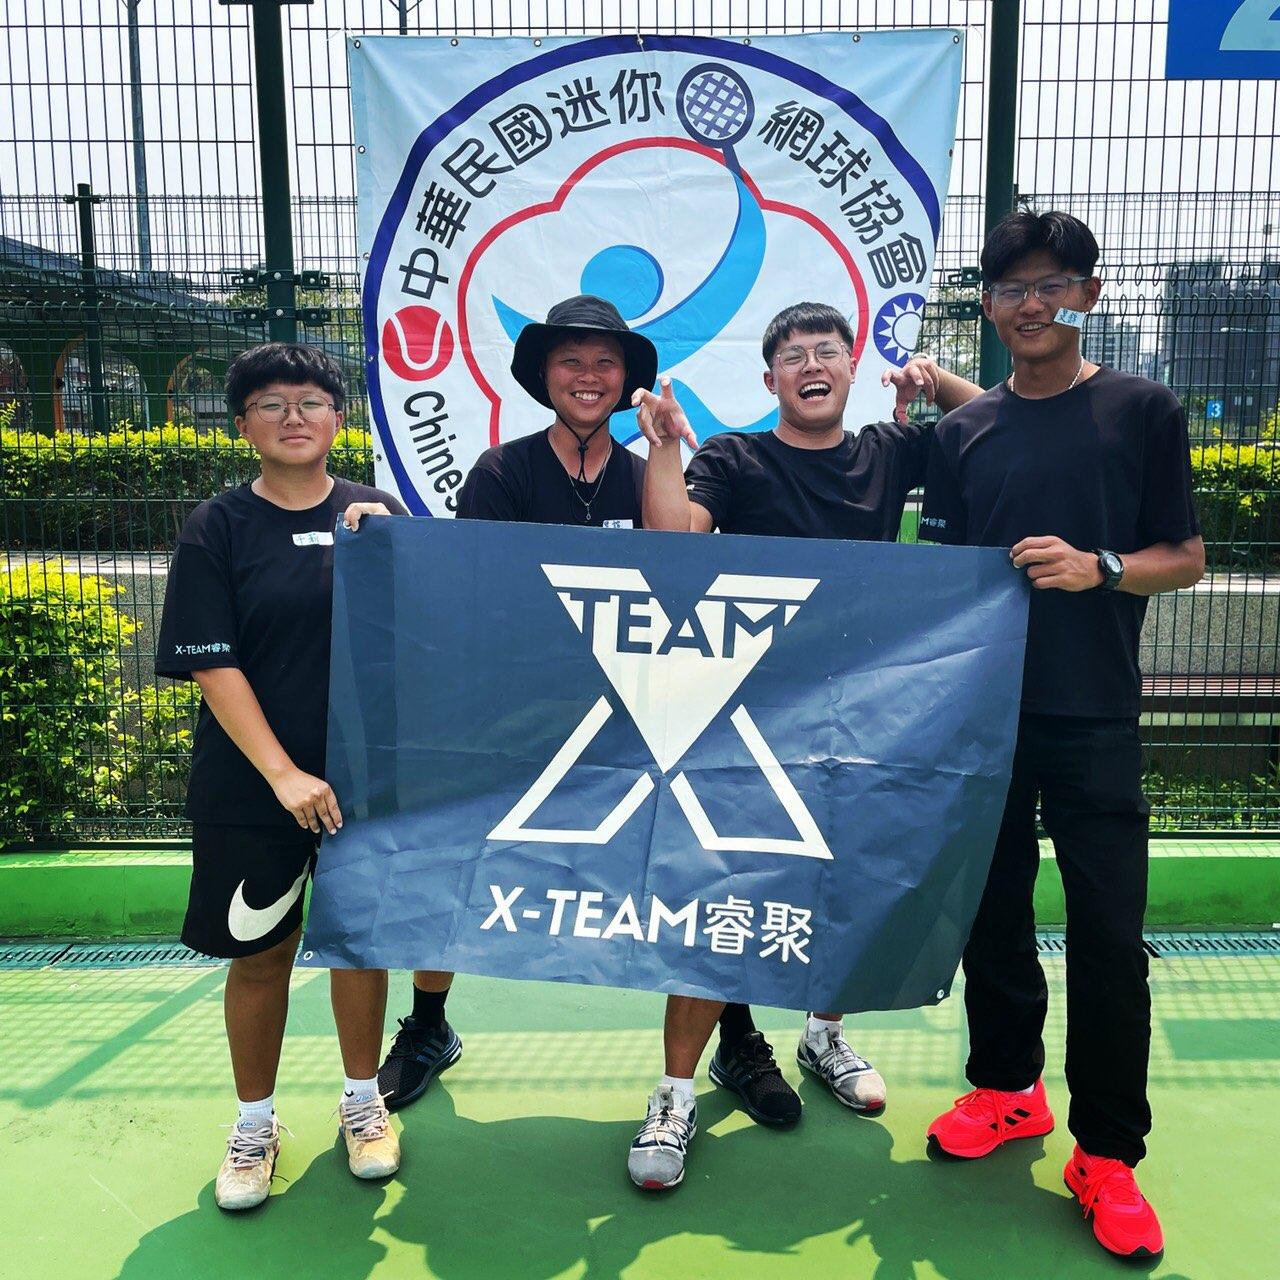 客製化網球課程 - XTeam睿聚